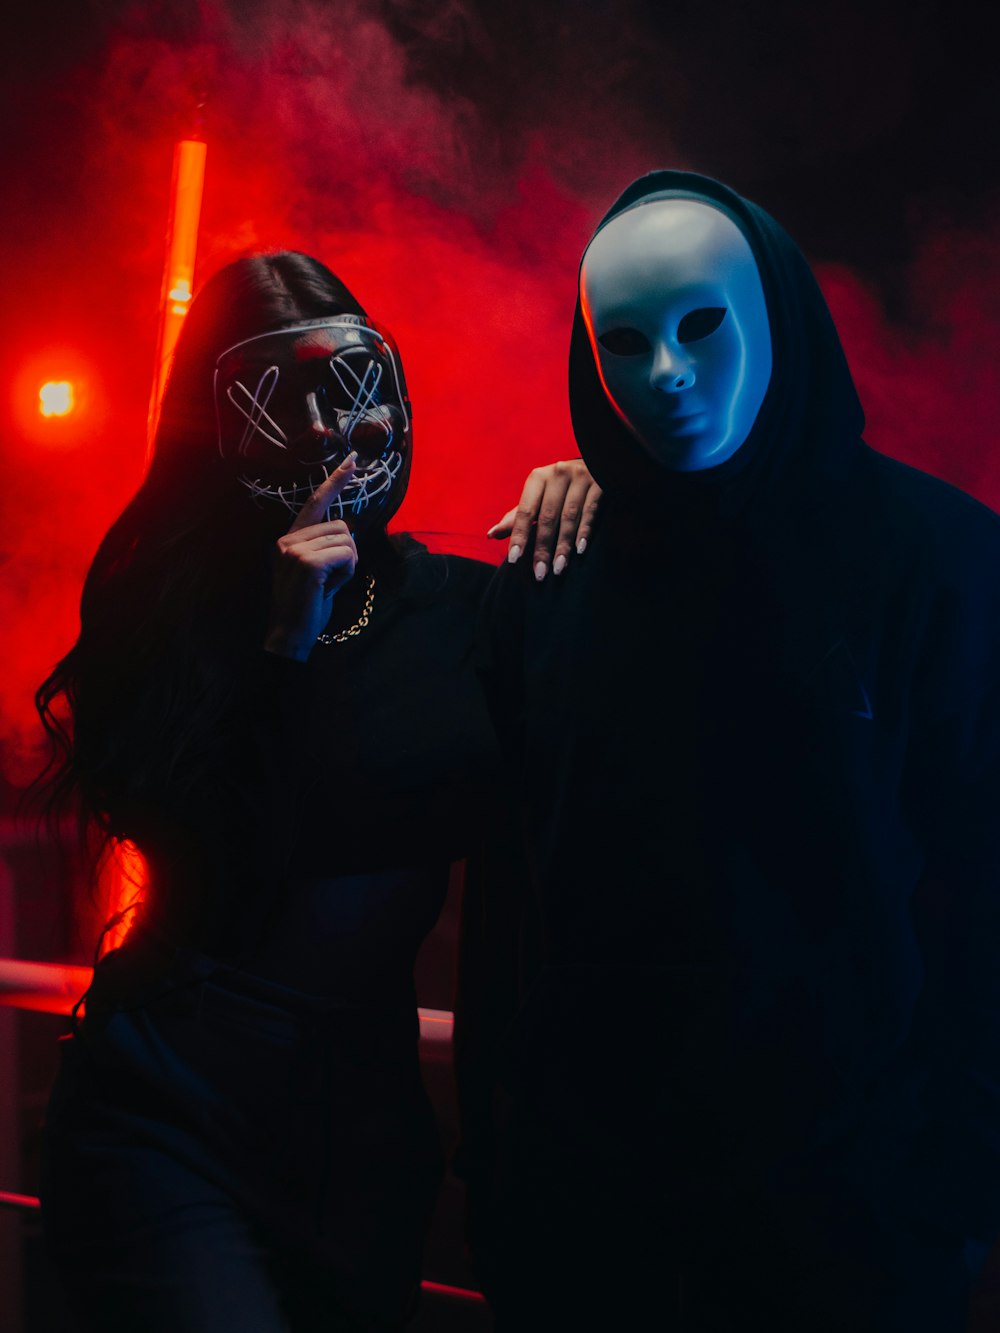 Un homme et une femme portant des masques debout devant un feu rouge